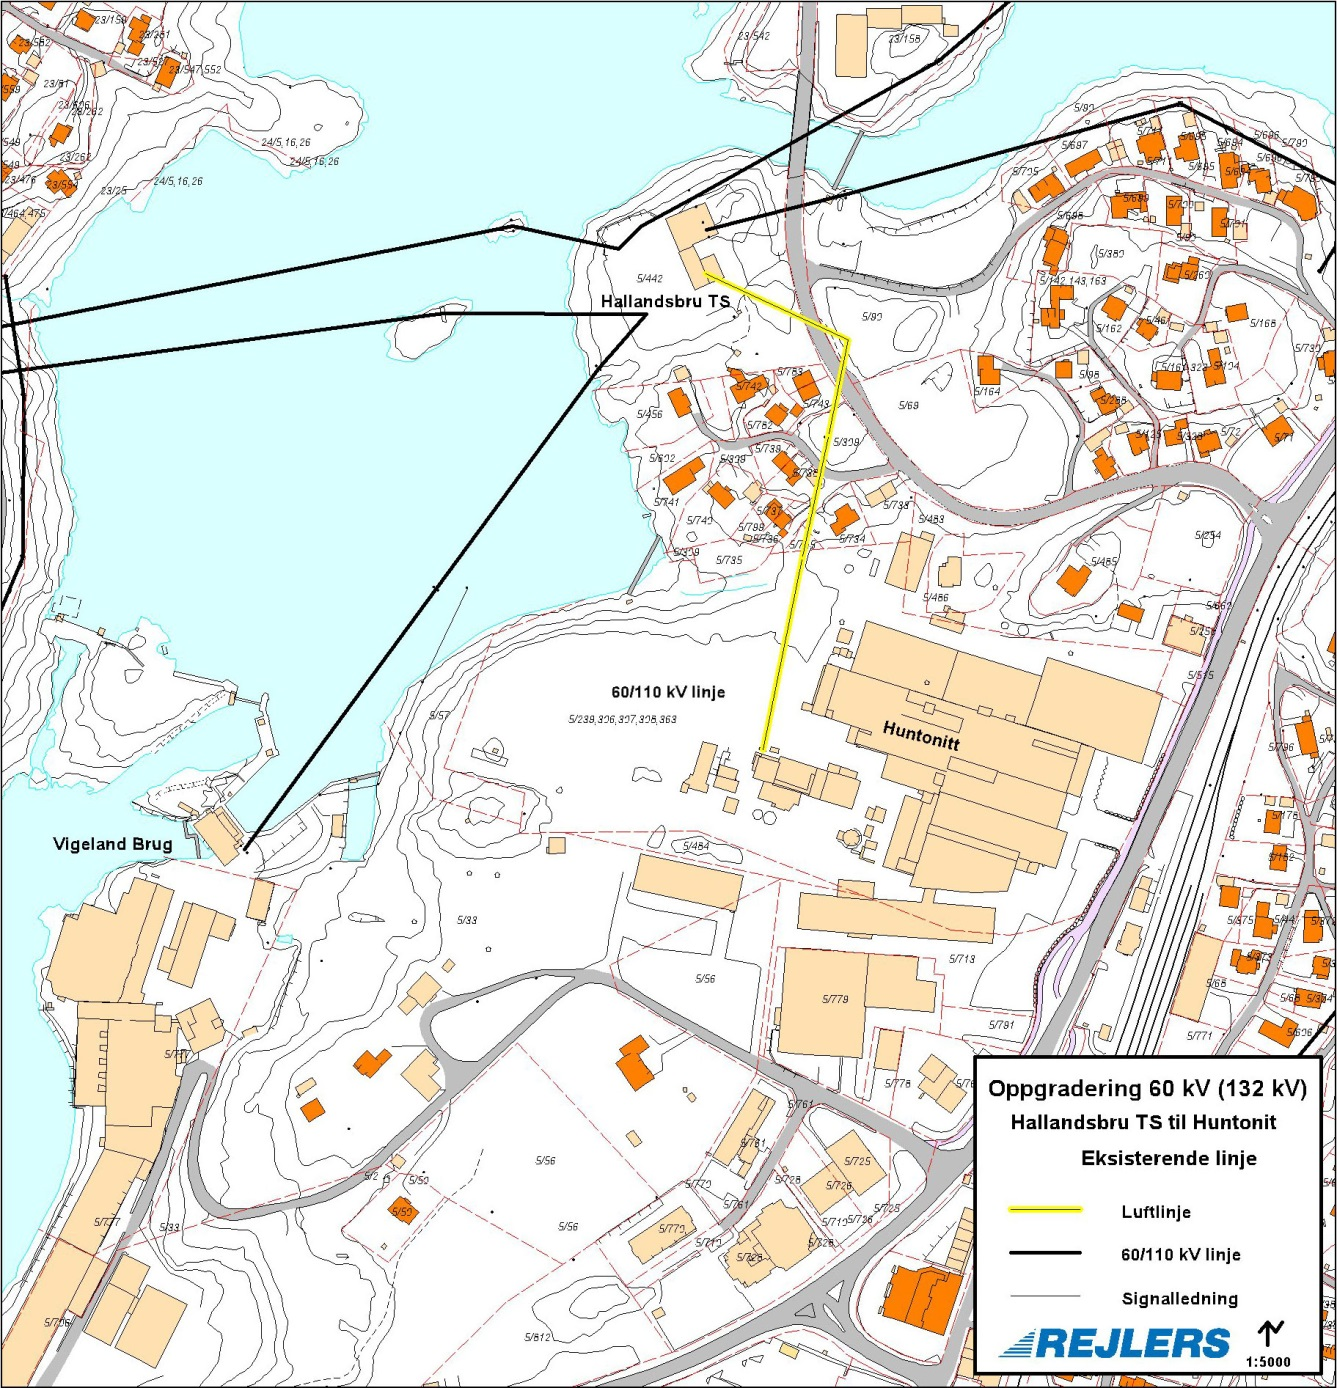 4 Beskrivelse av anlegget Huntonit AS ligger i Vennesla kommune. Her er også Hallandsbru transformatorstasjon, omkring 300-400m unna, som forsyner bedriften med strøm på en 66kV luftledning.